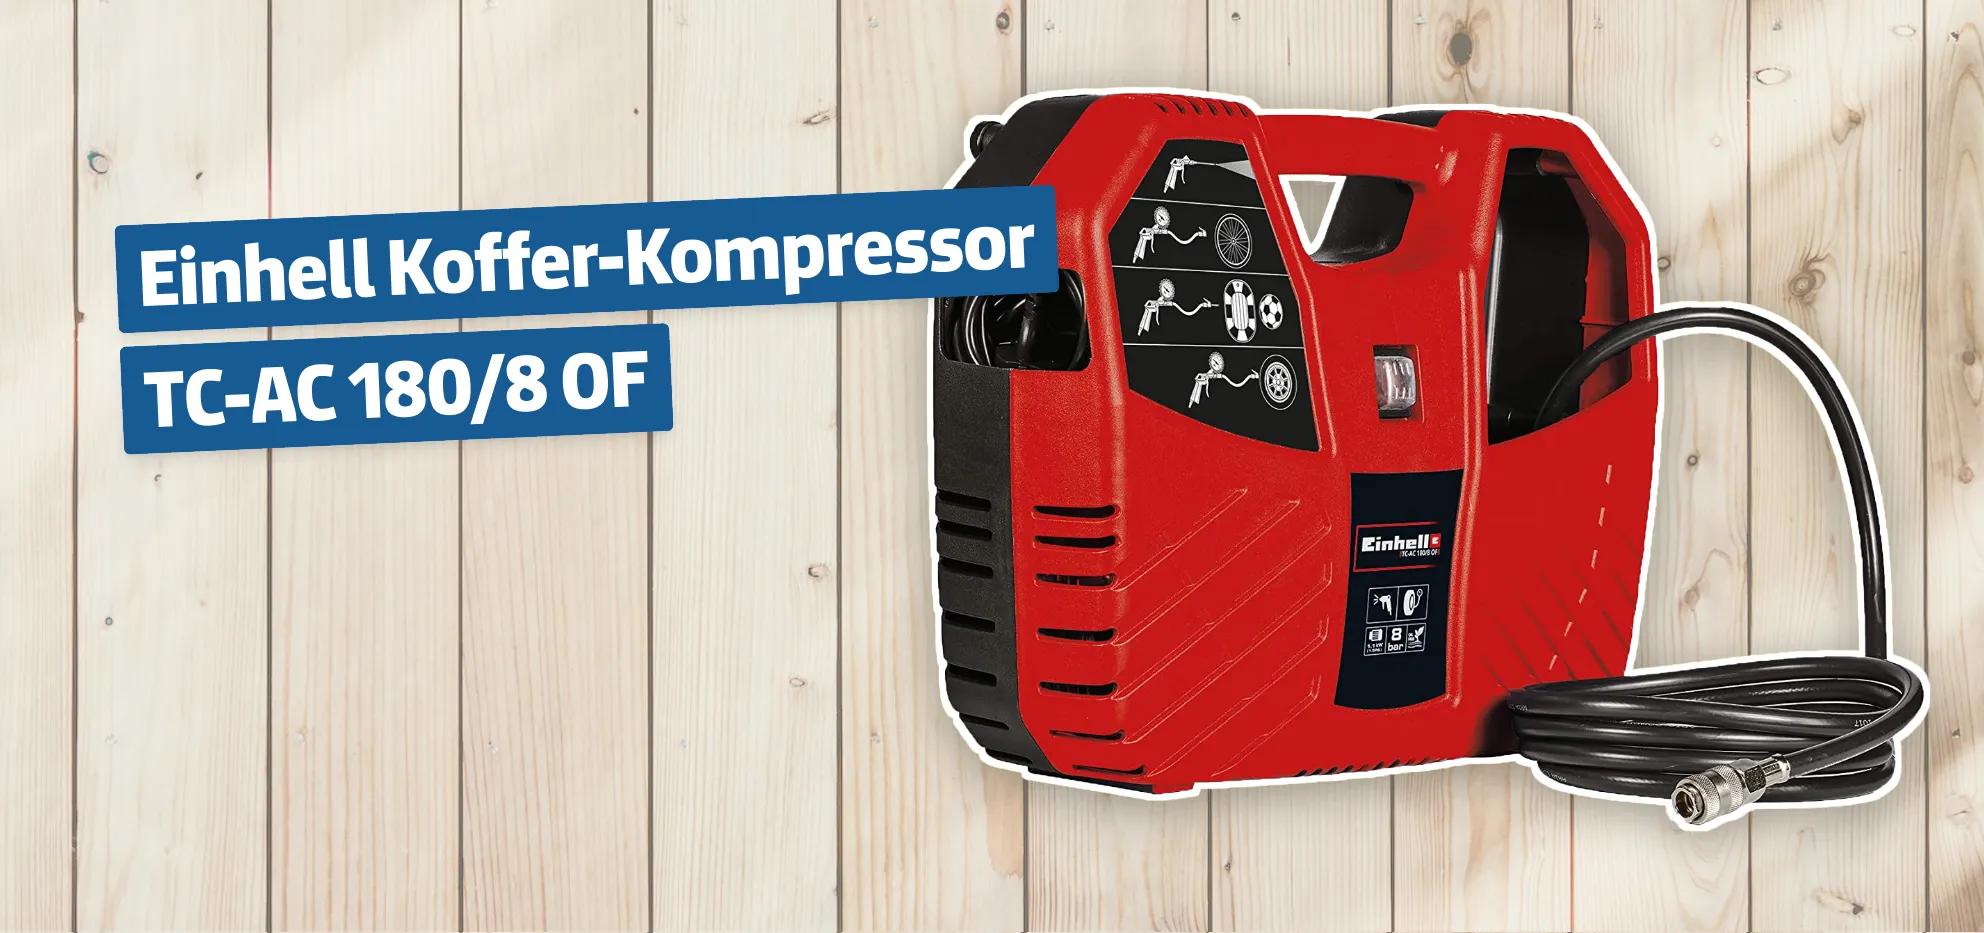 Einhell Koffer-Kompressor TC-AC 180/8 OF